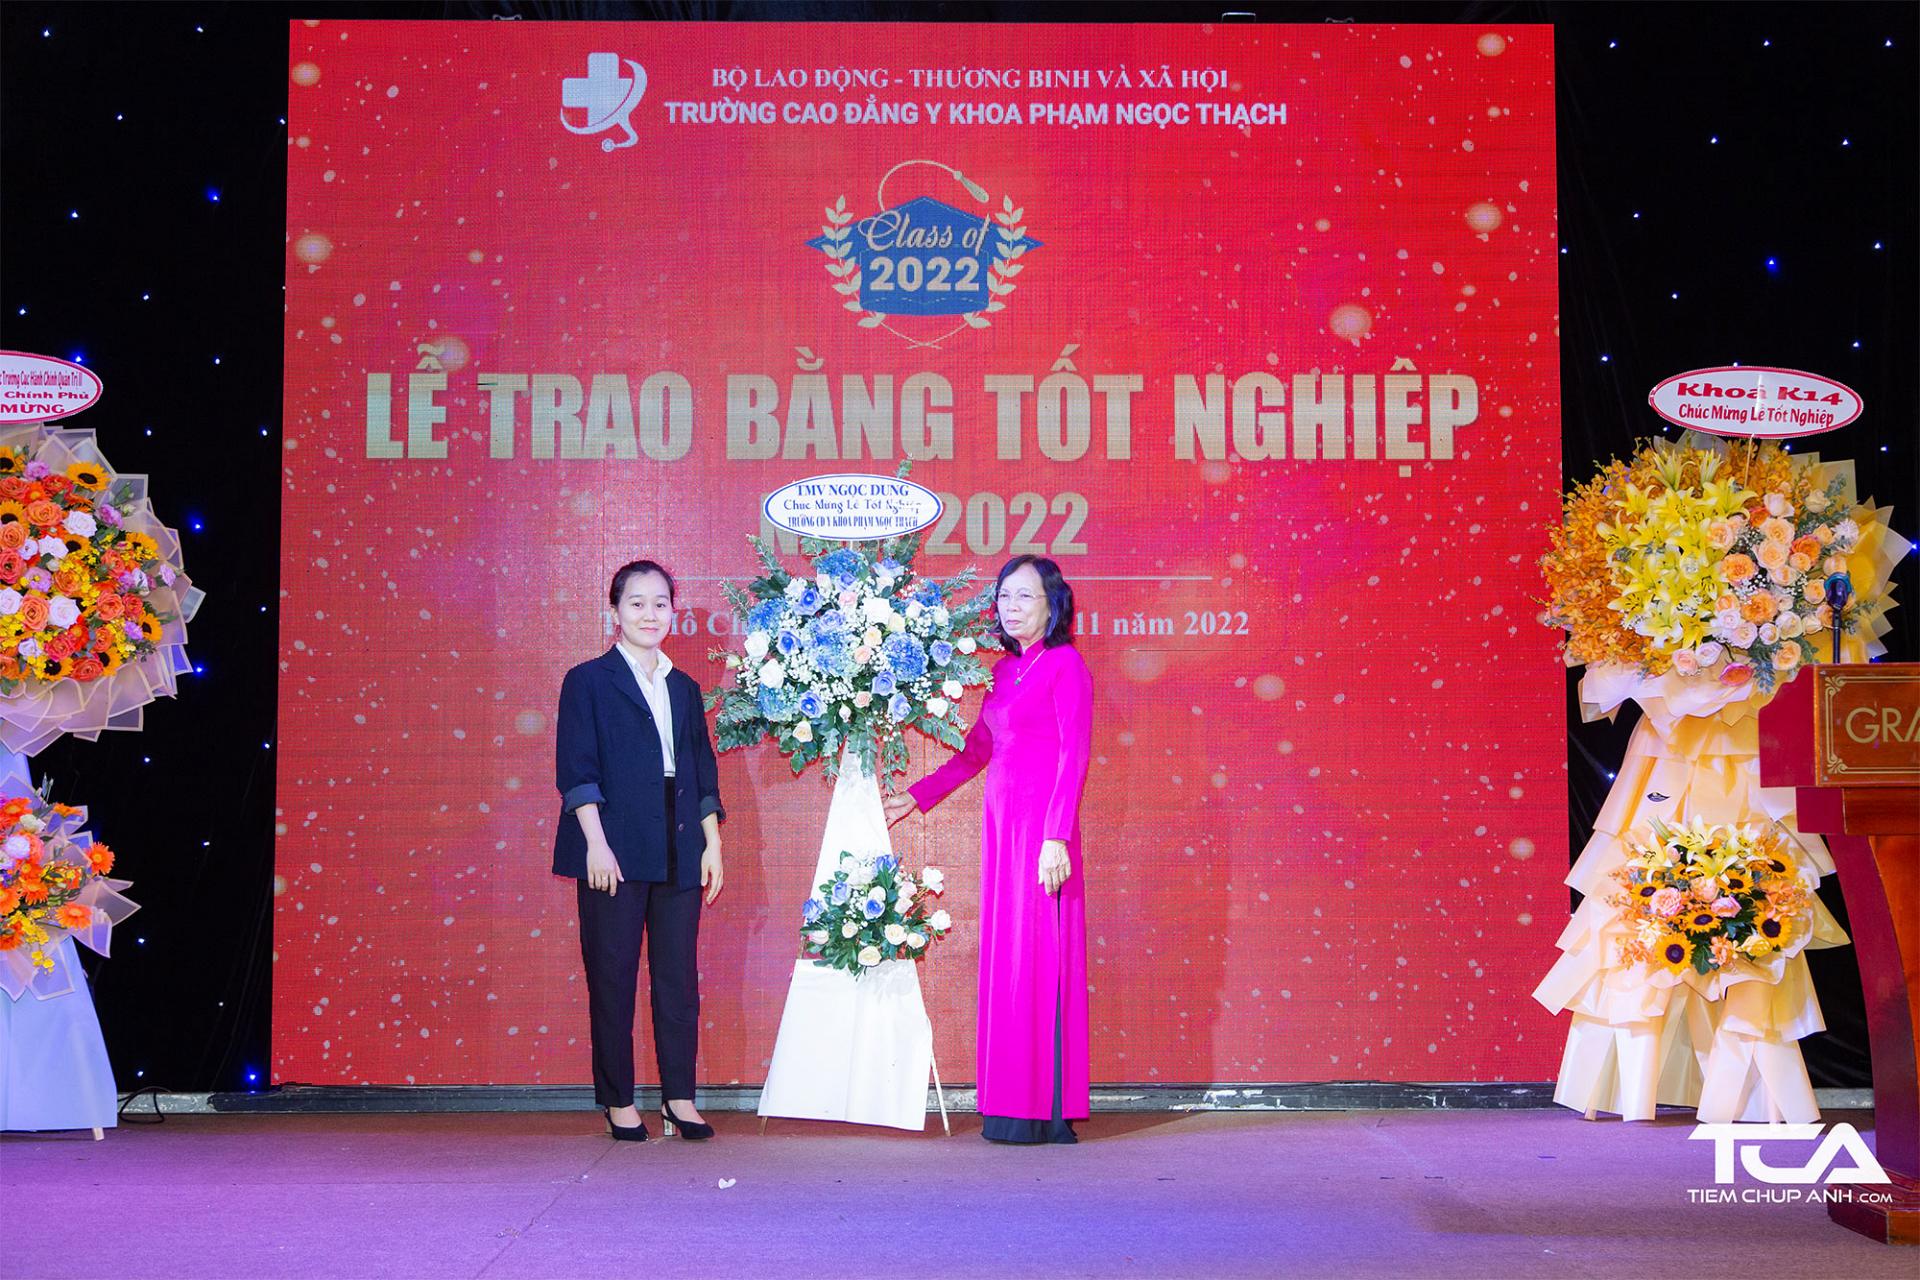 Thẩm mỹ viện Ngọc Dung tặng hoa chúc mừng Trường Cao đẳng y khoa Phạm Ngọc Thạch 